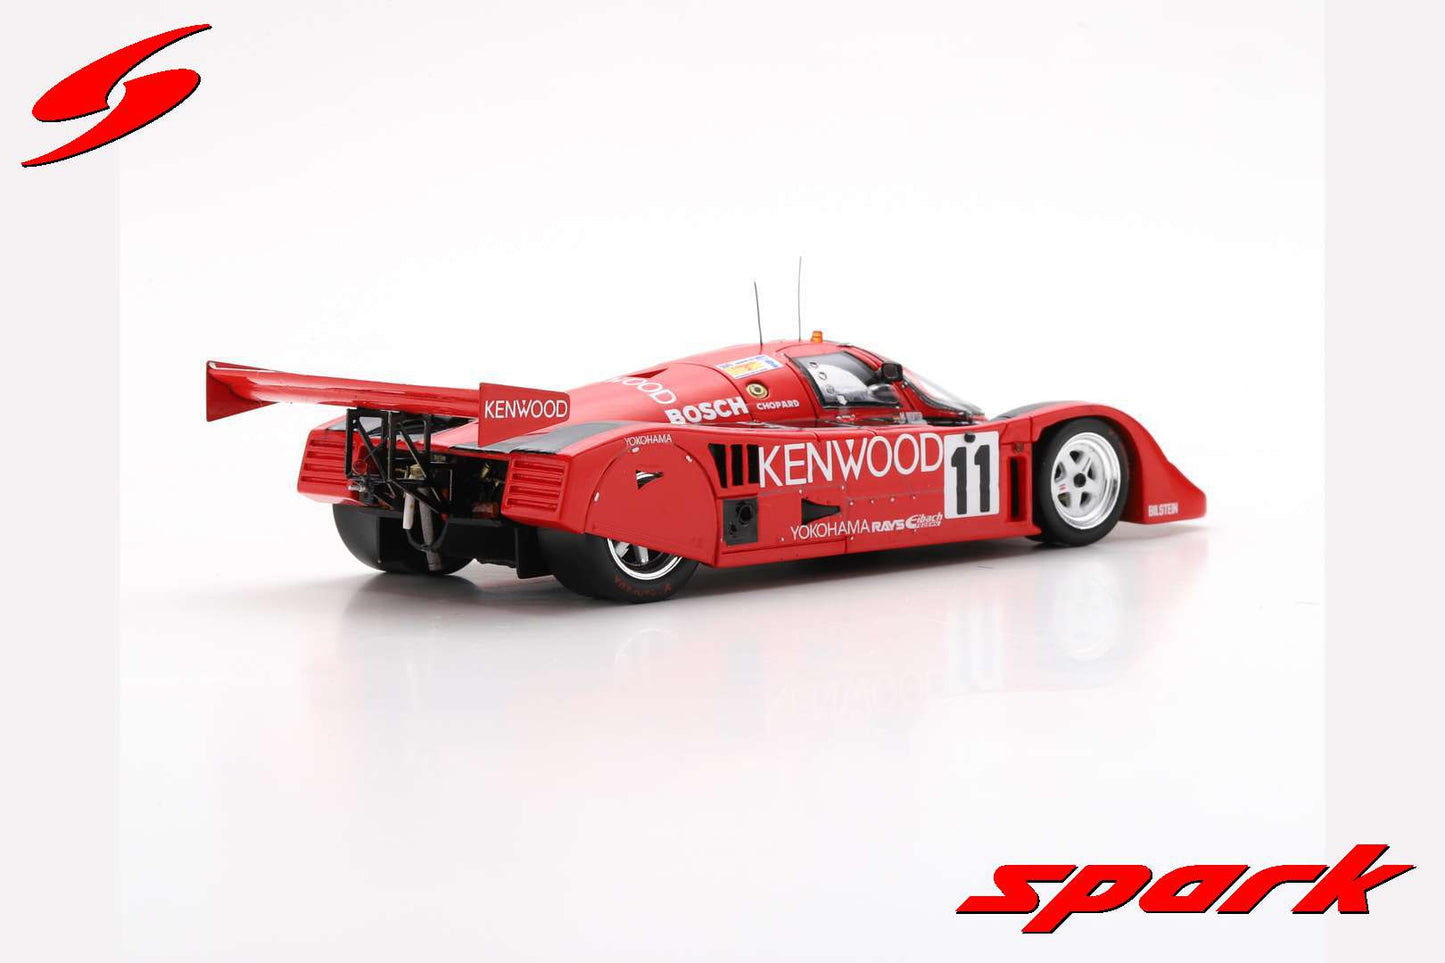 Spark S9885 1/43 Porsche 962 CK 6 No.11 24H Le Mans 1991 M. Reuter - H. Toivonen - J.-J. Lehto